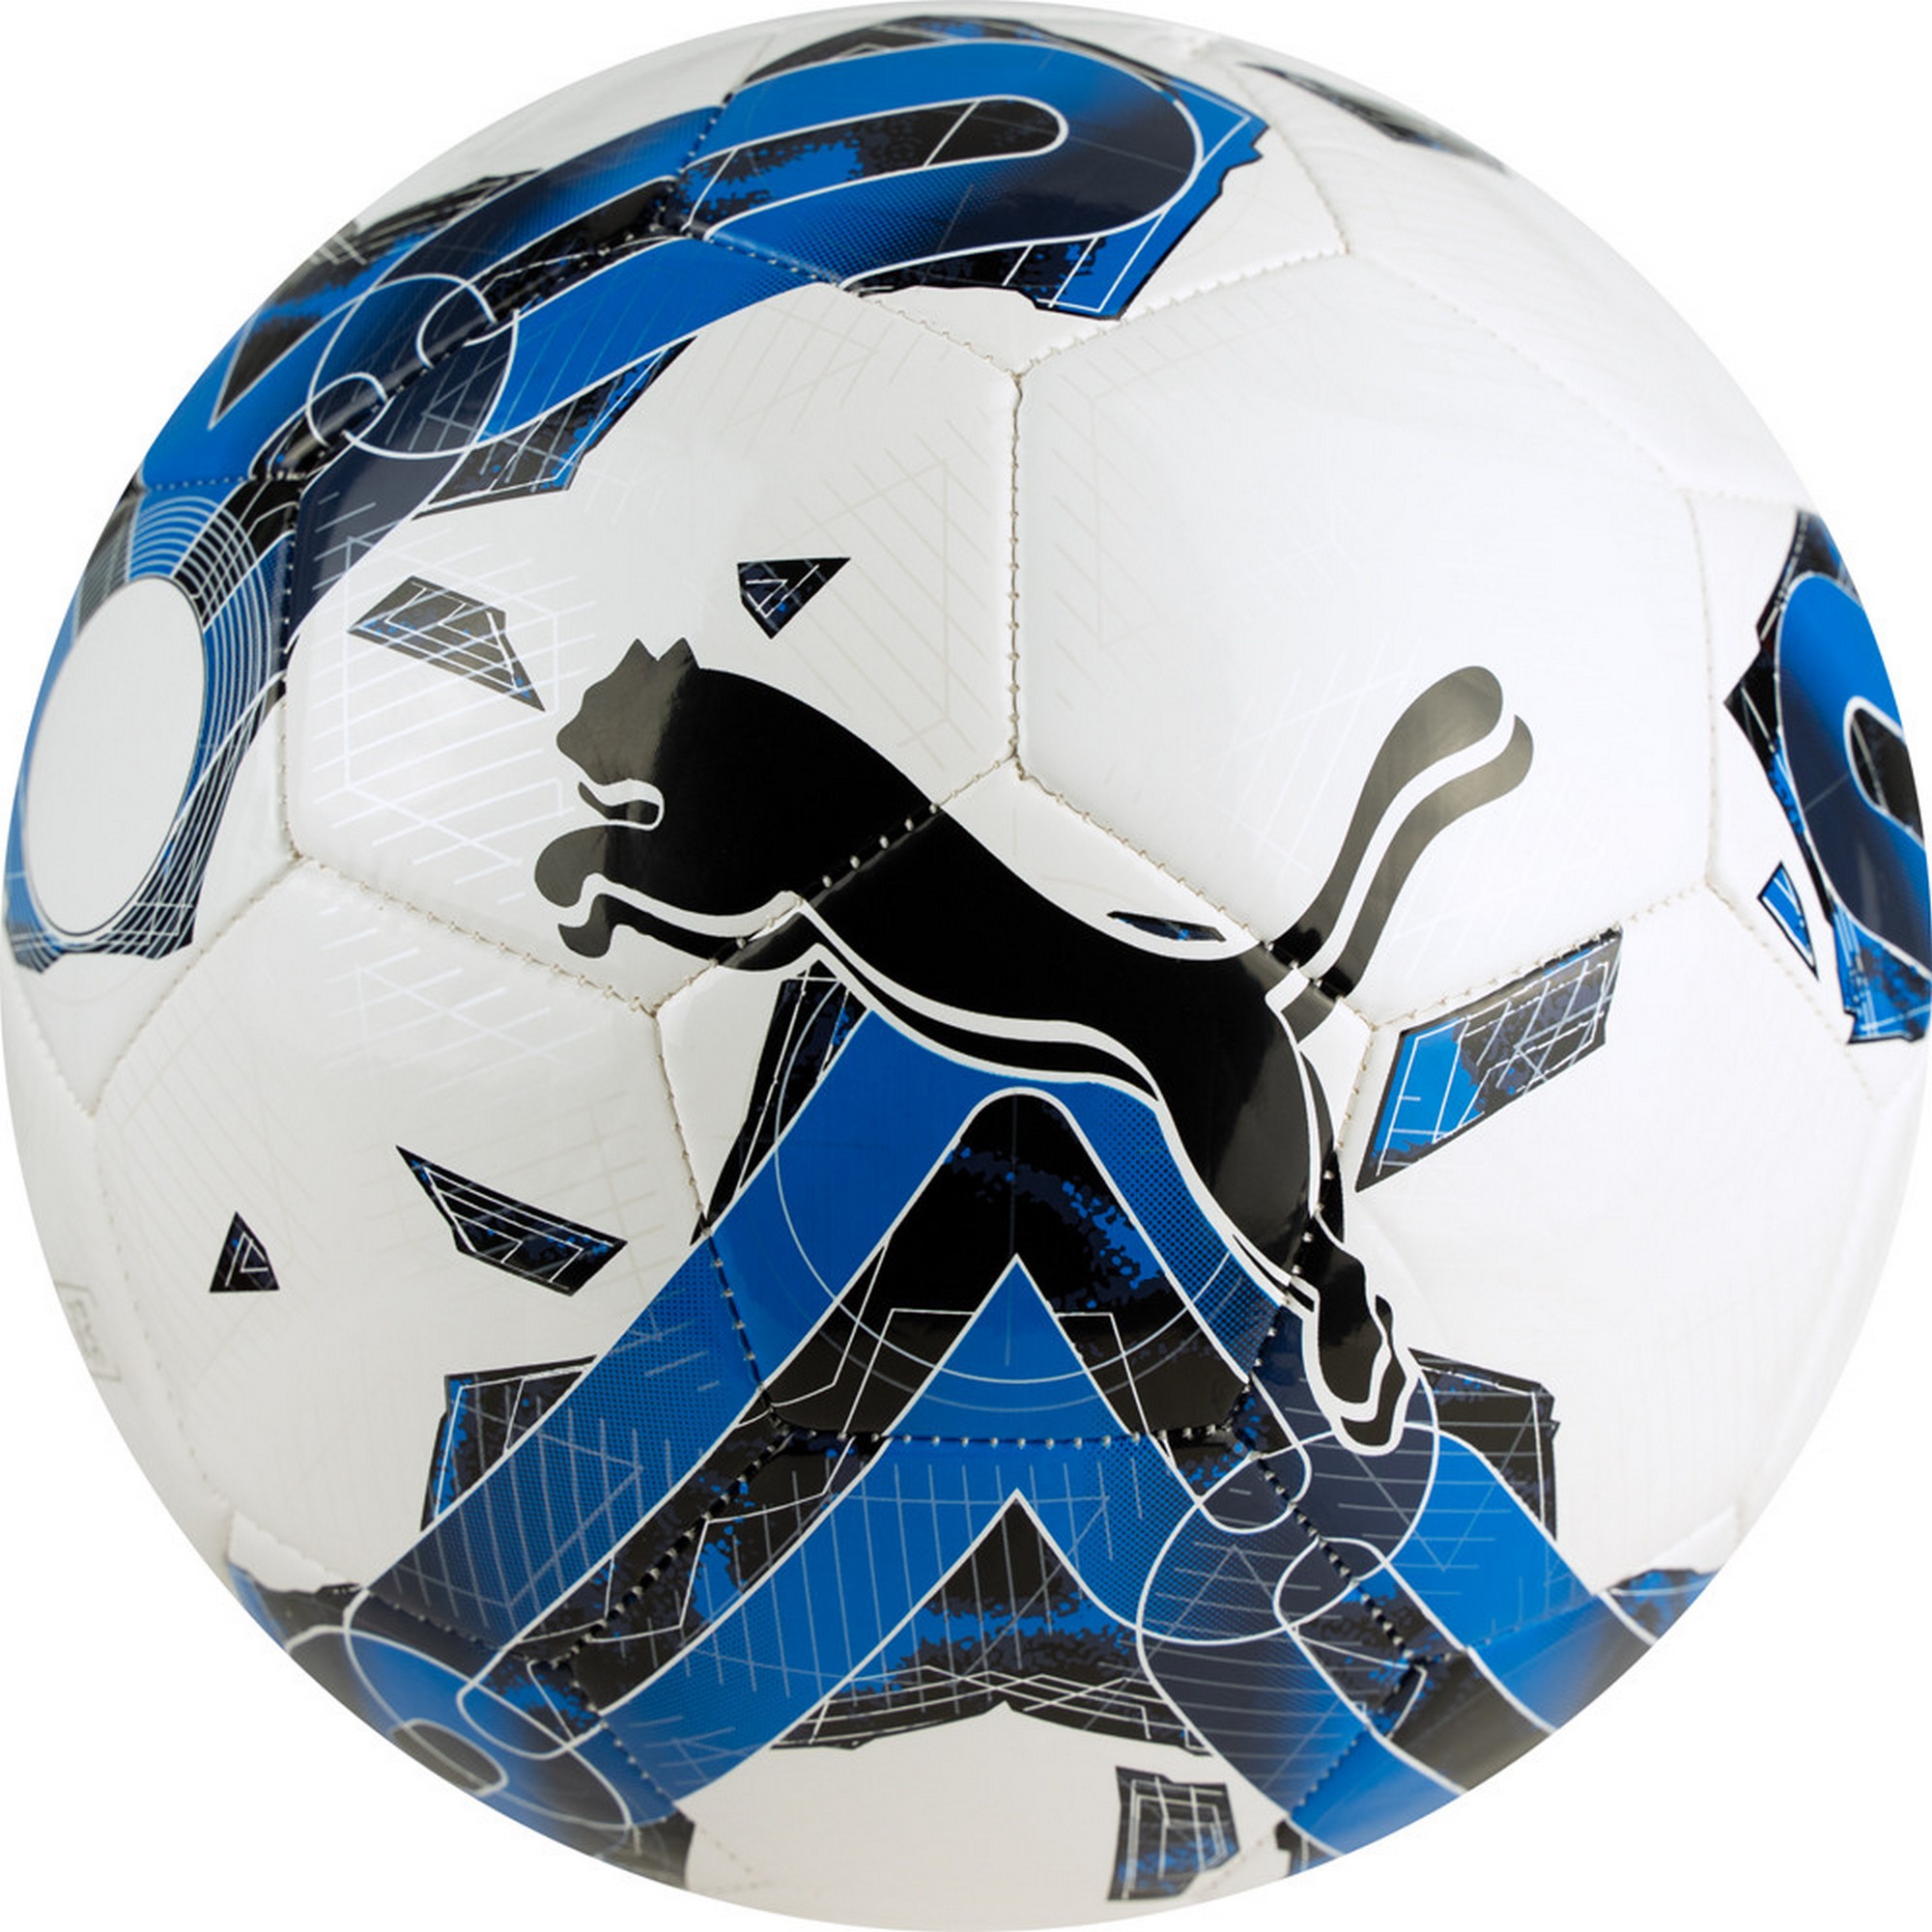 Мяч футбольный Puma Orbita 6 MS 08378703 р.5 2000_2000